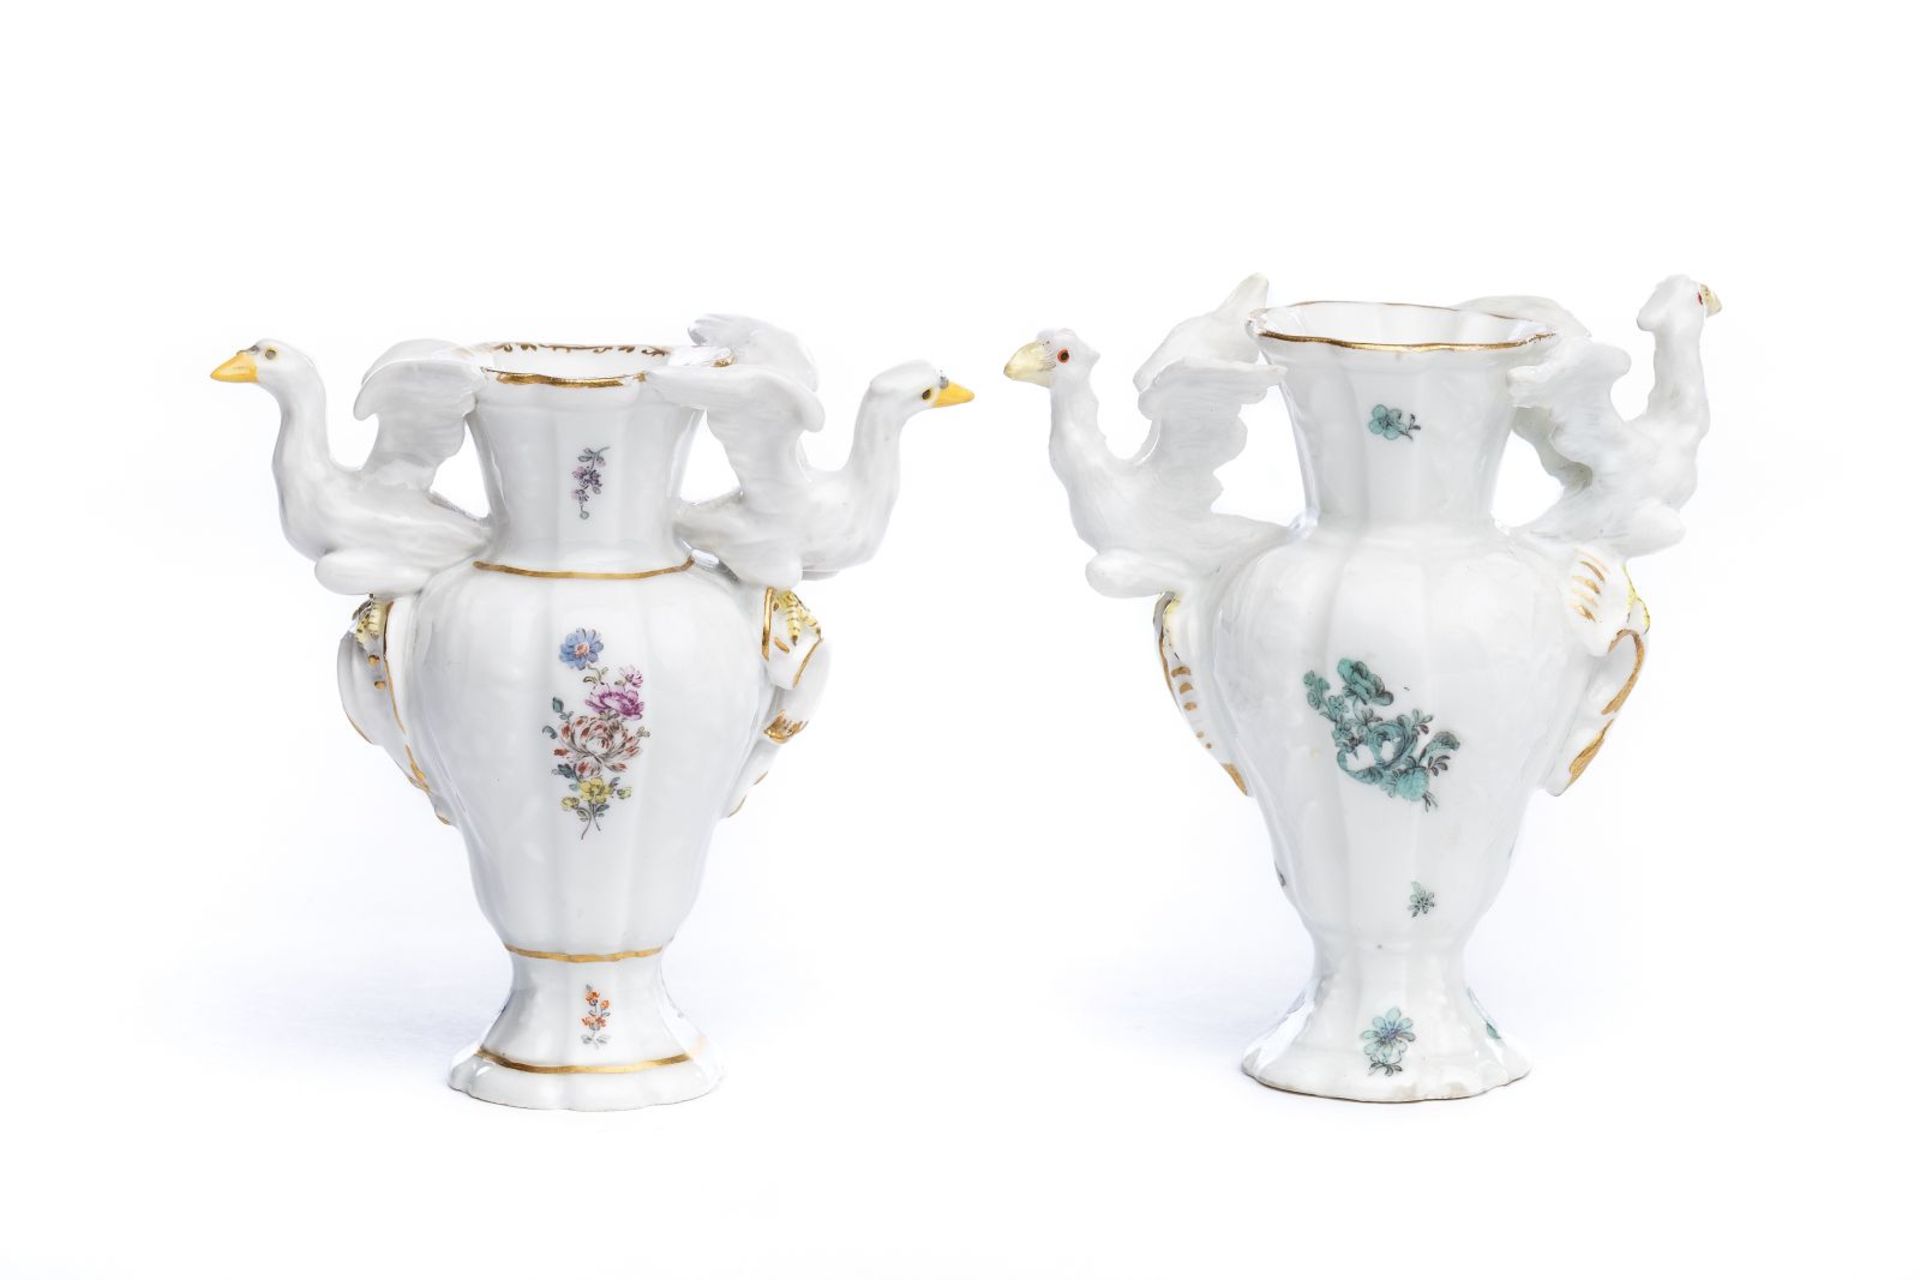 2 kleine Porzellan Vasen, Meissen 17502 kleine Porzellan Vasen, Meissen 1750, bauchiger Korpus